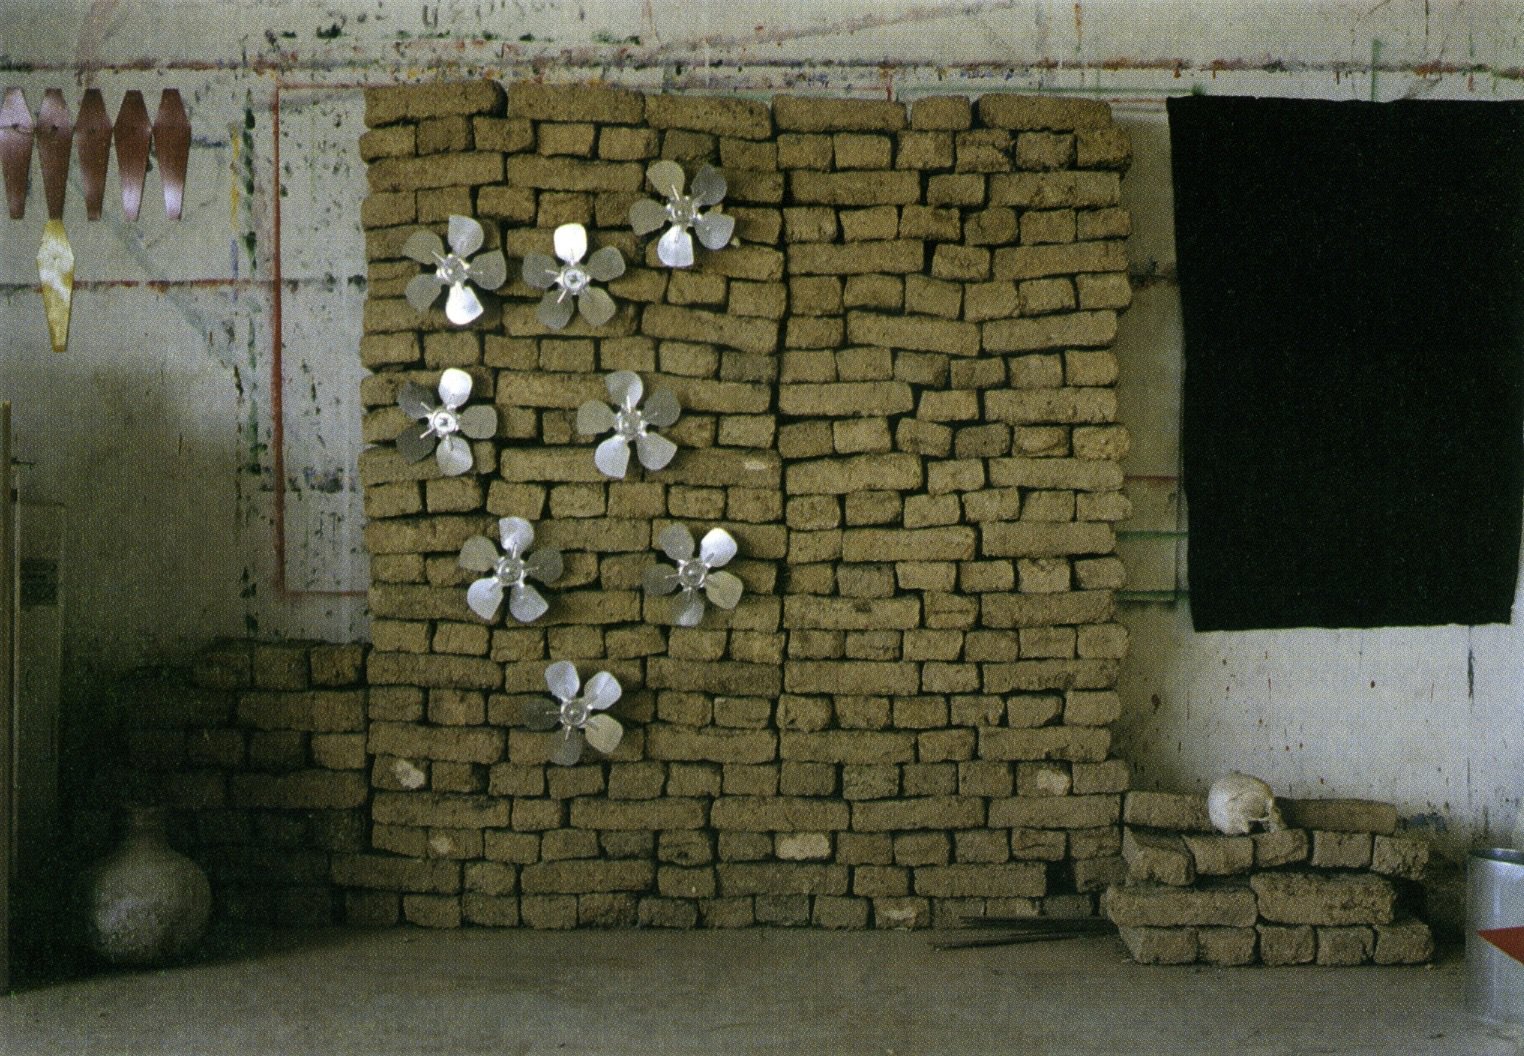 Thanasis Totsikas, Untitled, bricks, elecrtirc fans, 250 x 220 cm, 1986